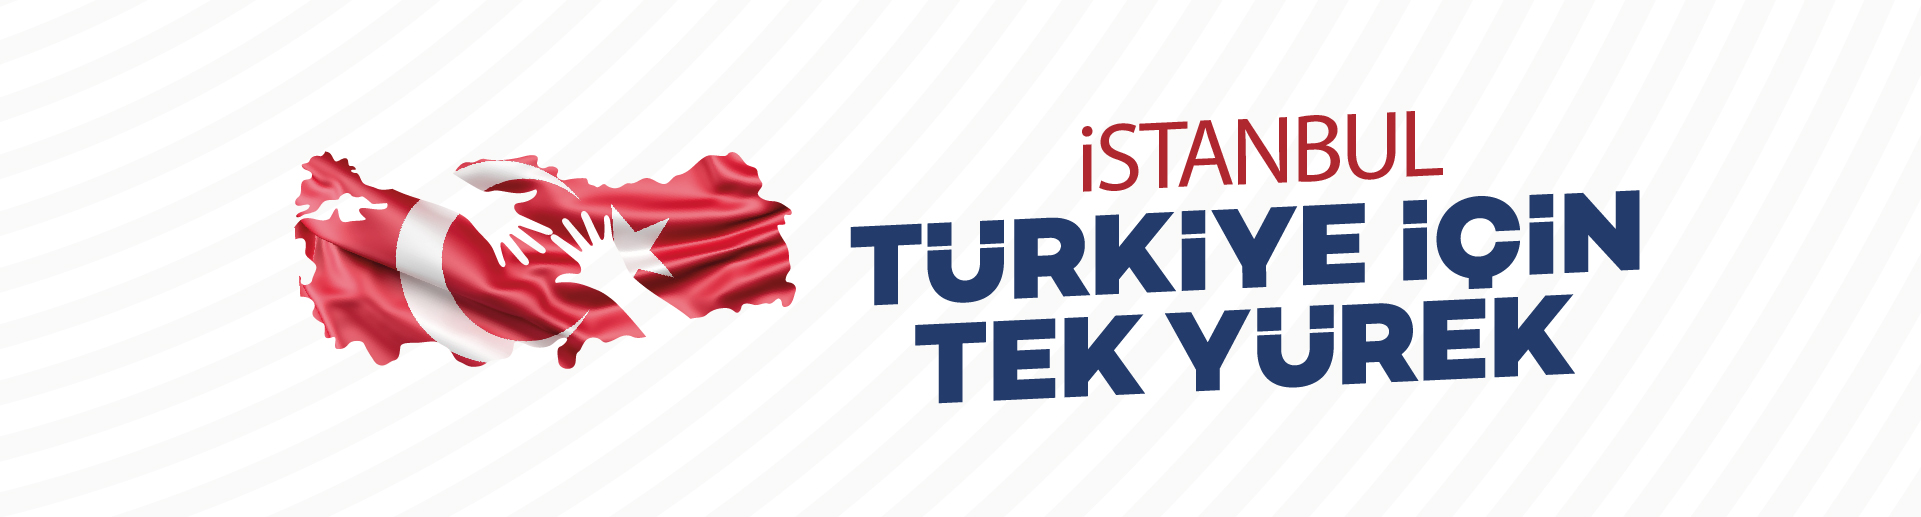 İstanbul Türkiye için Tek Yürek